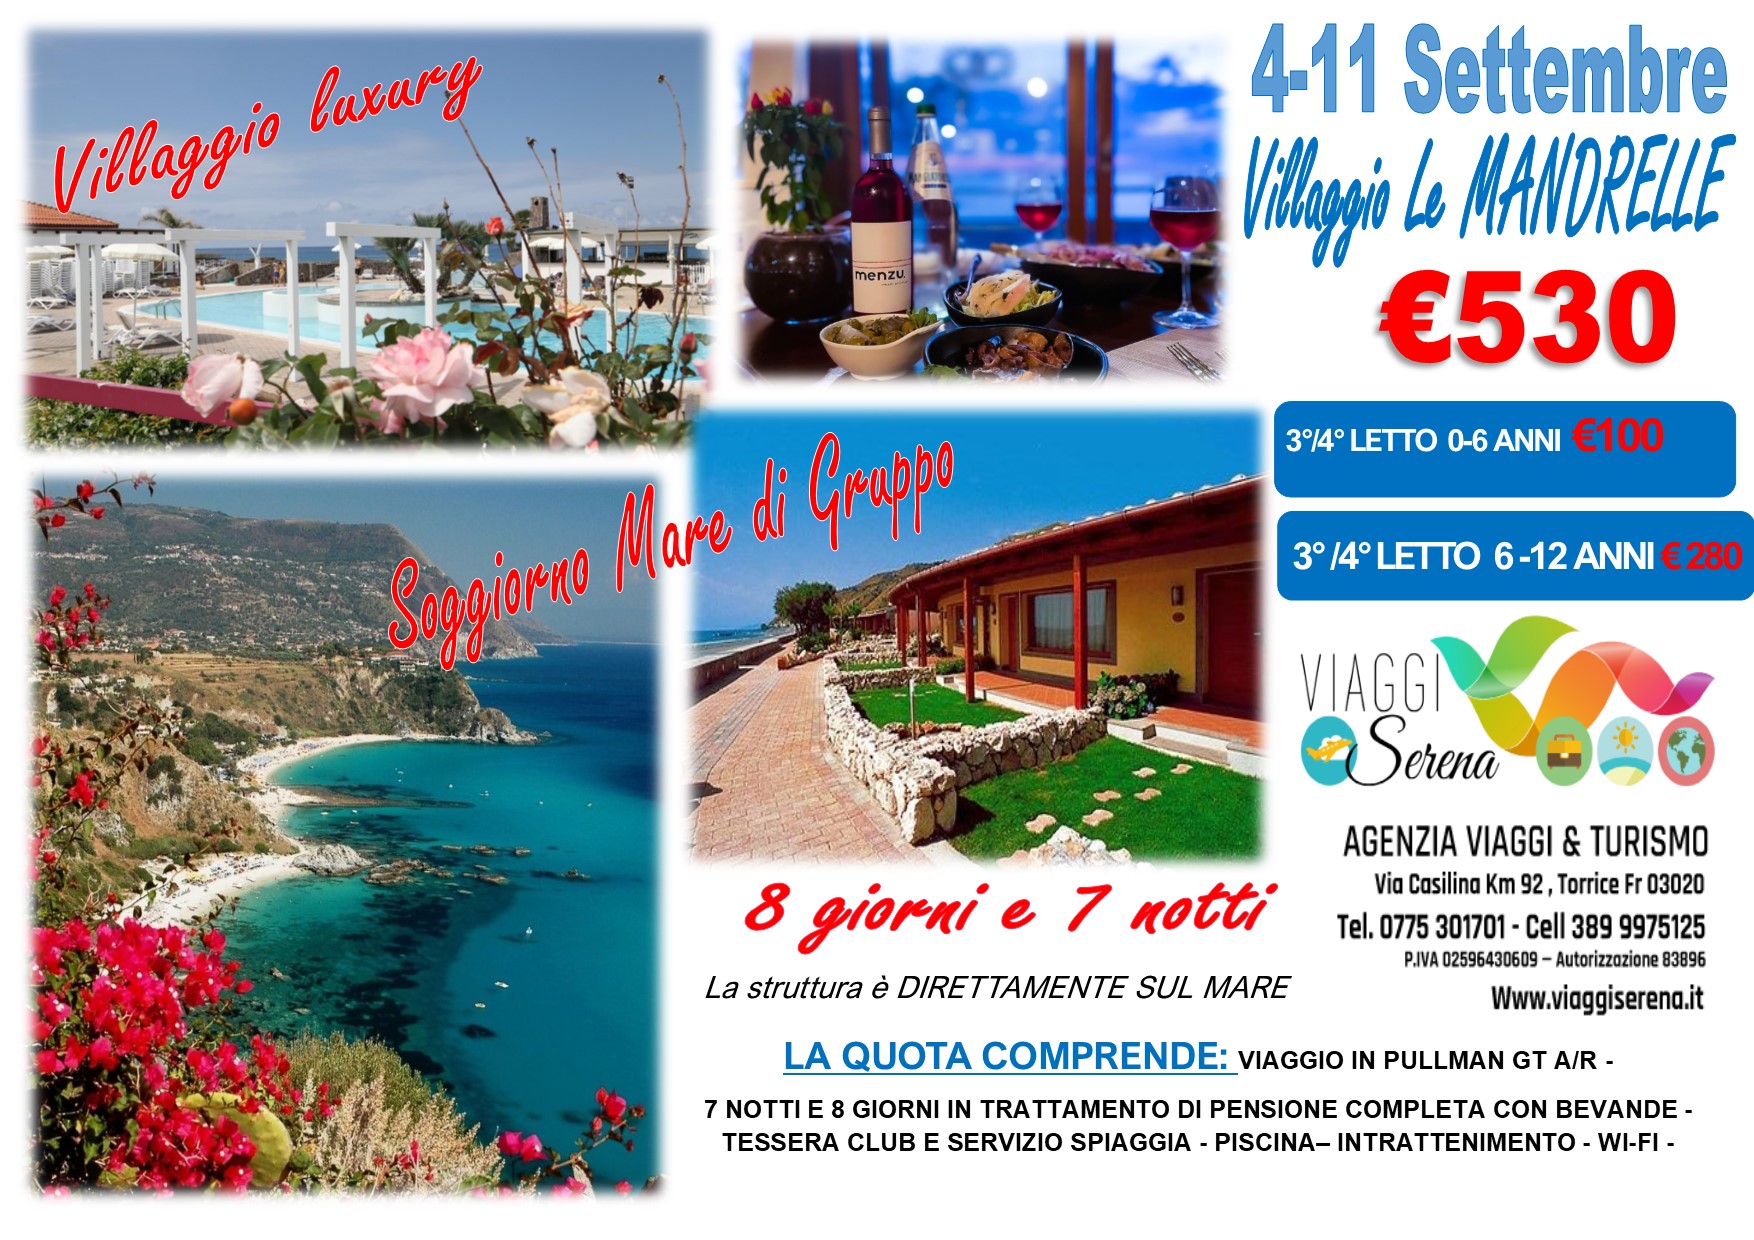 Viaggi di Gruppo: “PROMO LUXURY” Villaggio LE MANDRELLE ad Amantea 4-11 Settembre € 530,00